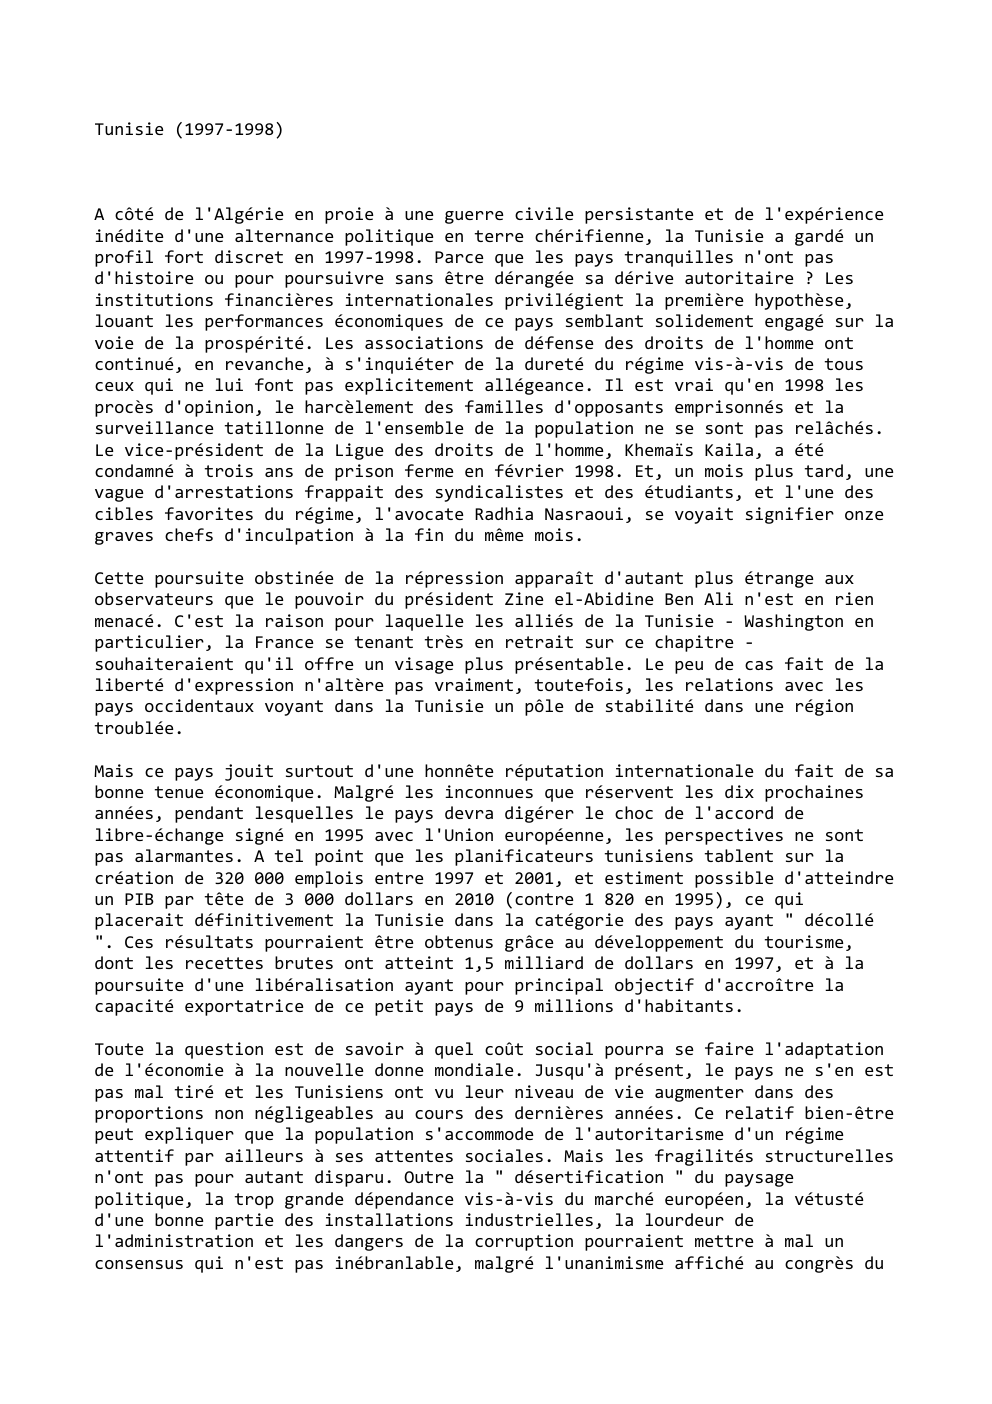 Prévisualisation du document Tunisie (1997-1998)

A côté de l'Algérie en proie à une guerre civile persistante et de l'expérience
inédite d'une alternance politique...